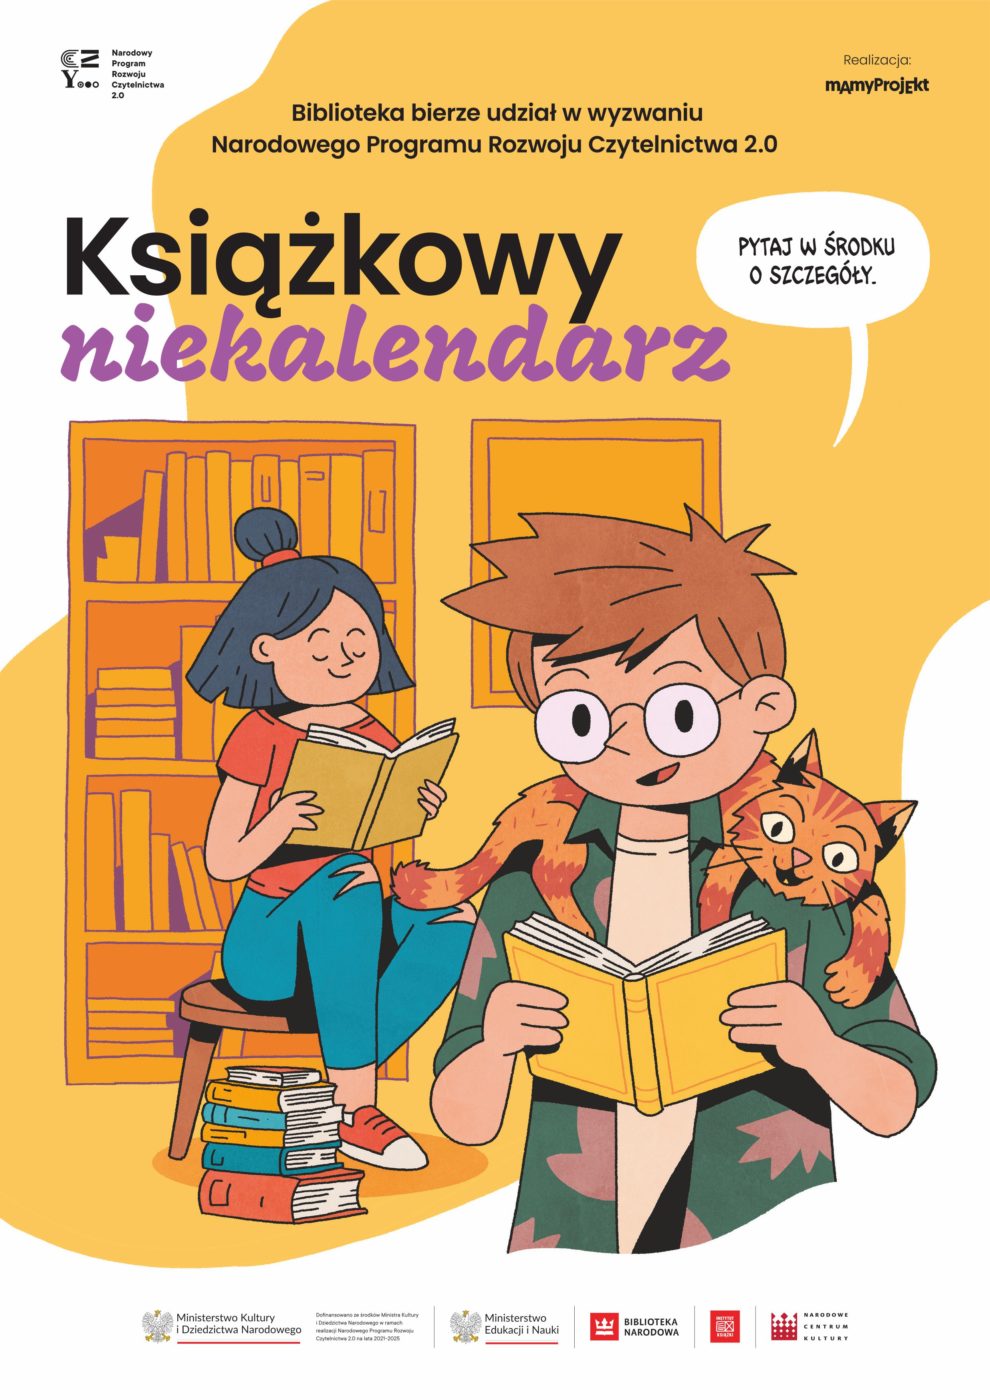 Plakat informujący o akcji. Biblioteka bierze udział w wyzwaniu narodowego Programu Rozwoju Czytelnictwa 2.0 Książkowy niekalendarz.